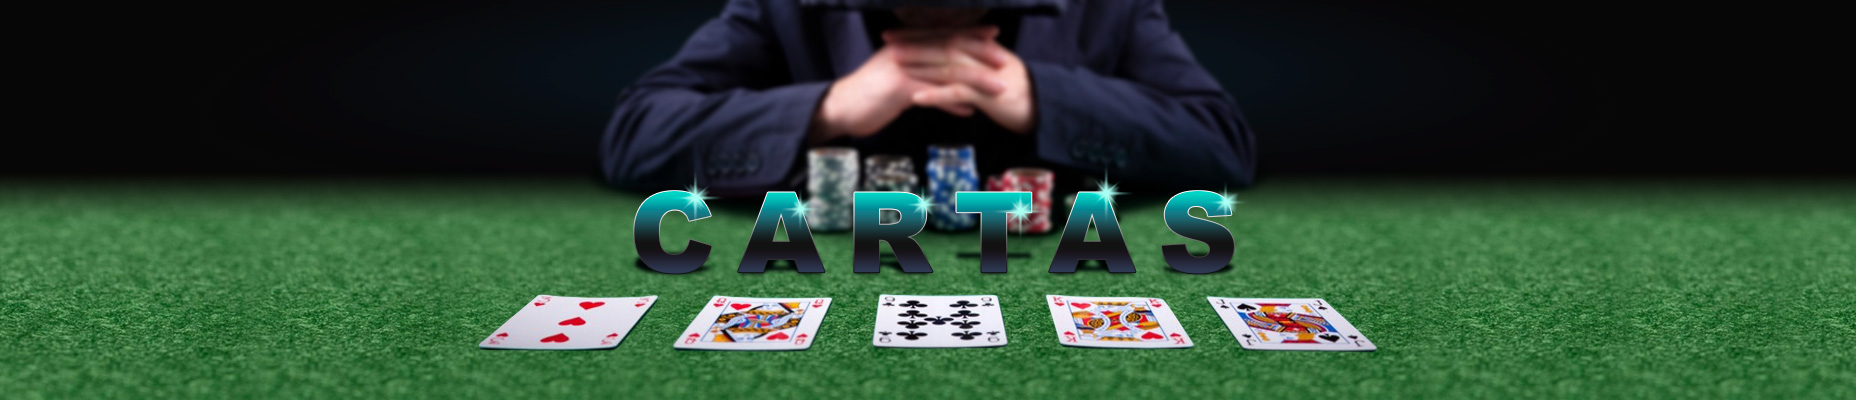 Pôquer online, banner de jogos de cartas